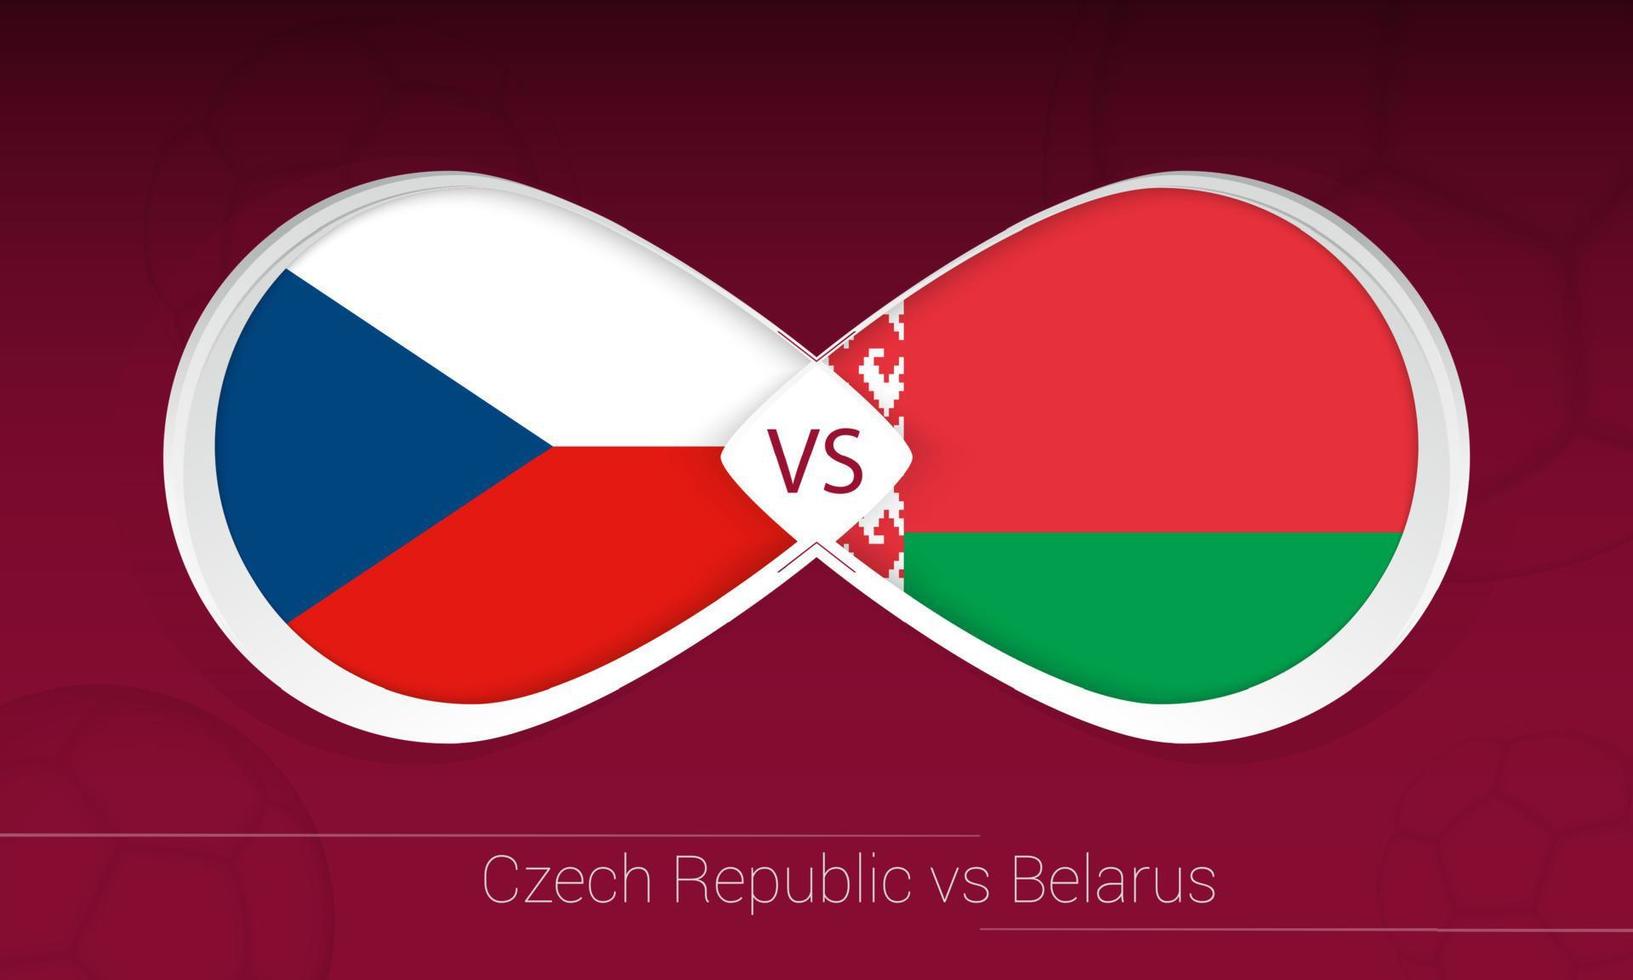 tschechien gegen weißrussland im fußballwettbewerb, gruppe e. gegen Symbol auf Fußballhintergrund. vektor